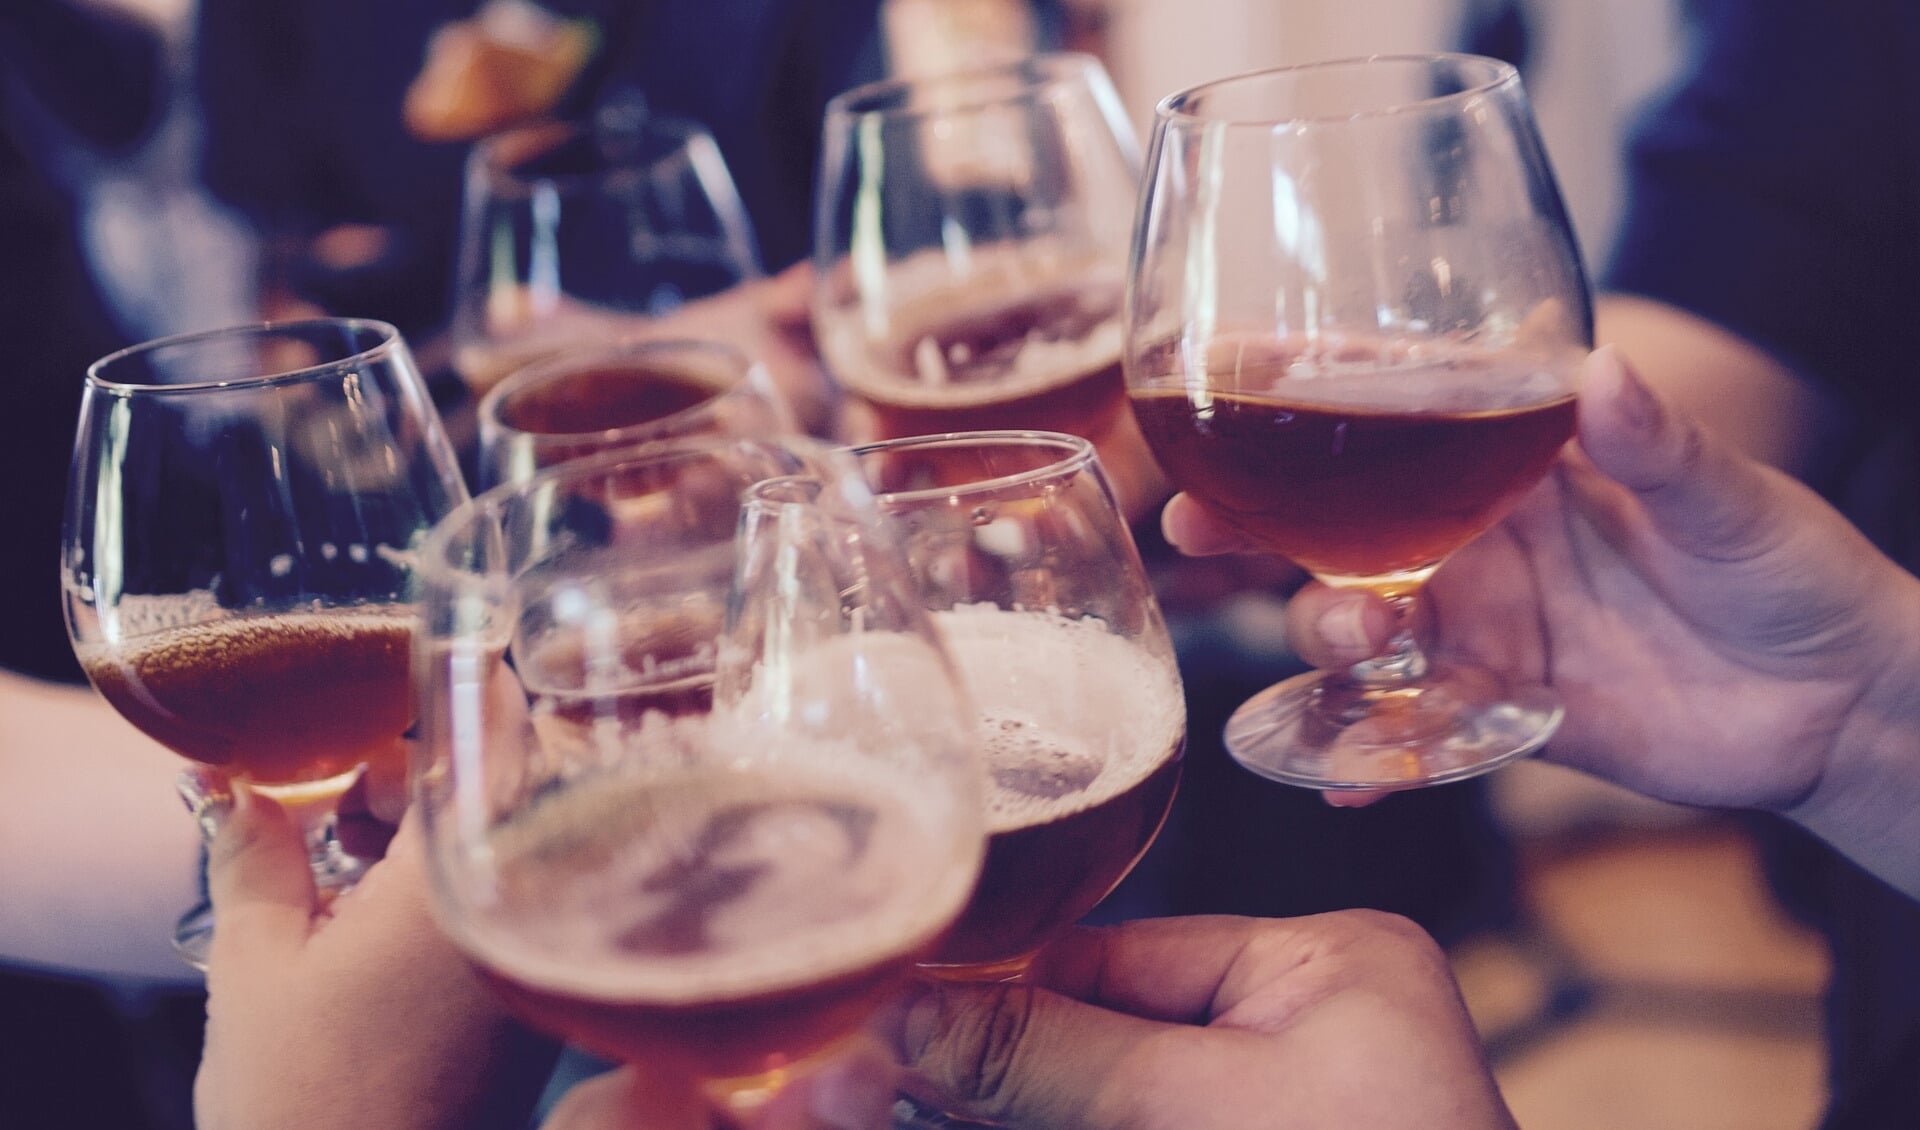 Er is onderzoek gedaan naar het alcoholgebruik onder volwassenen.